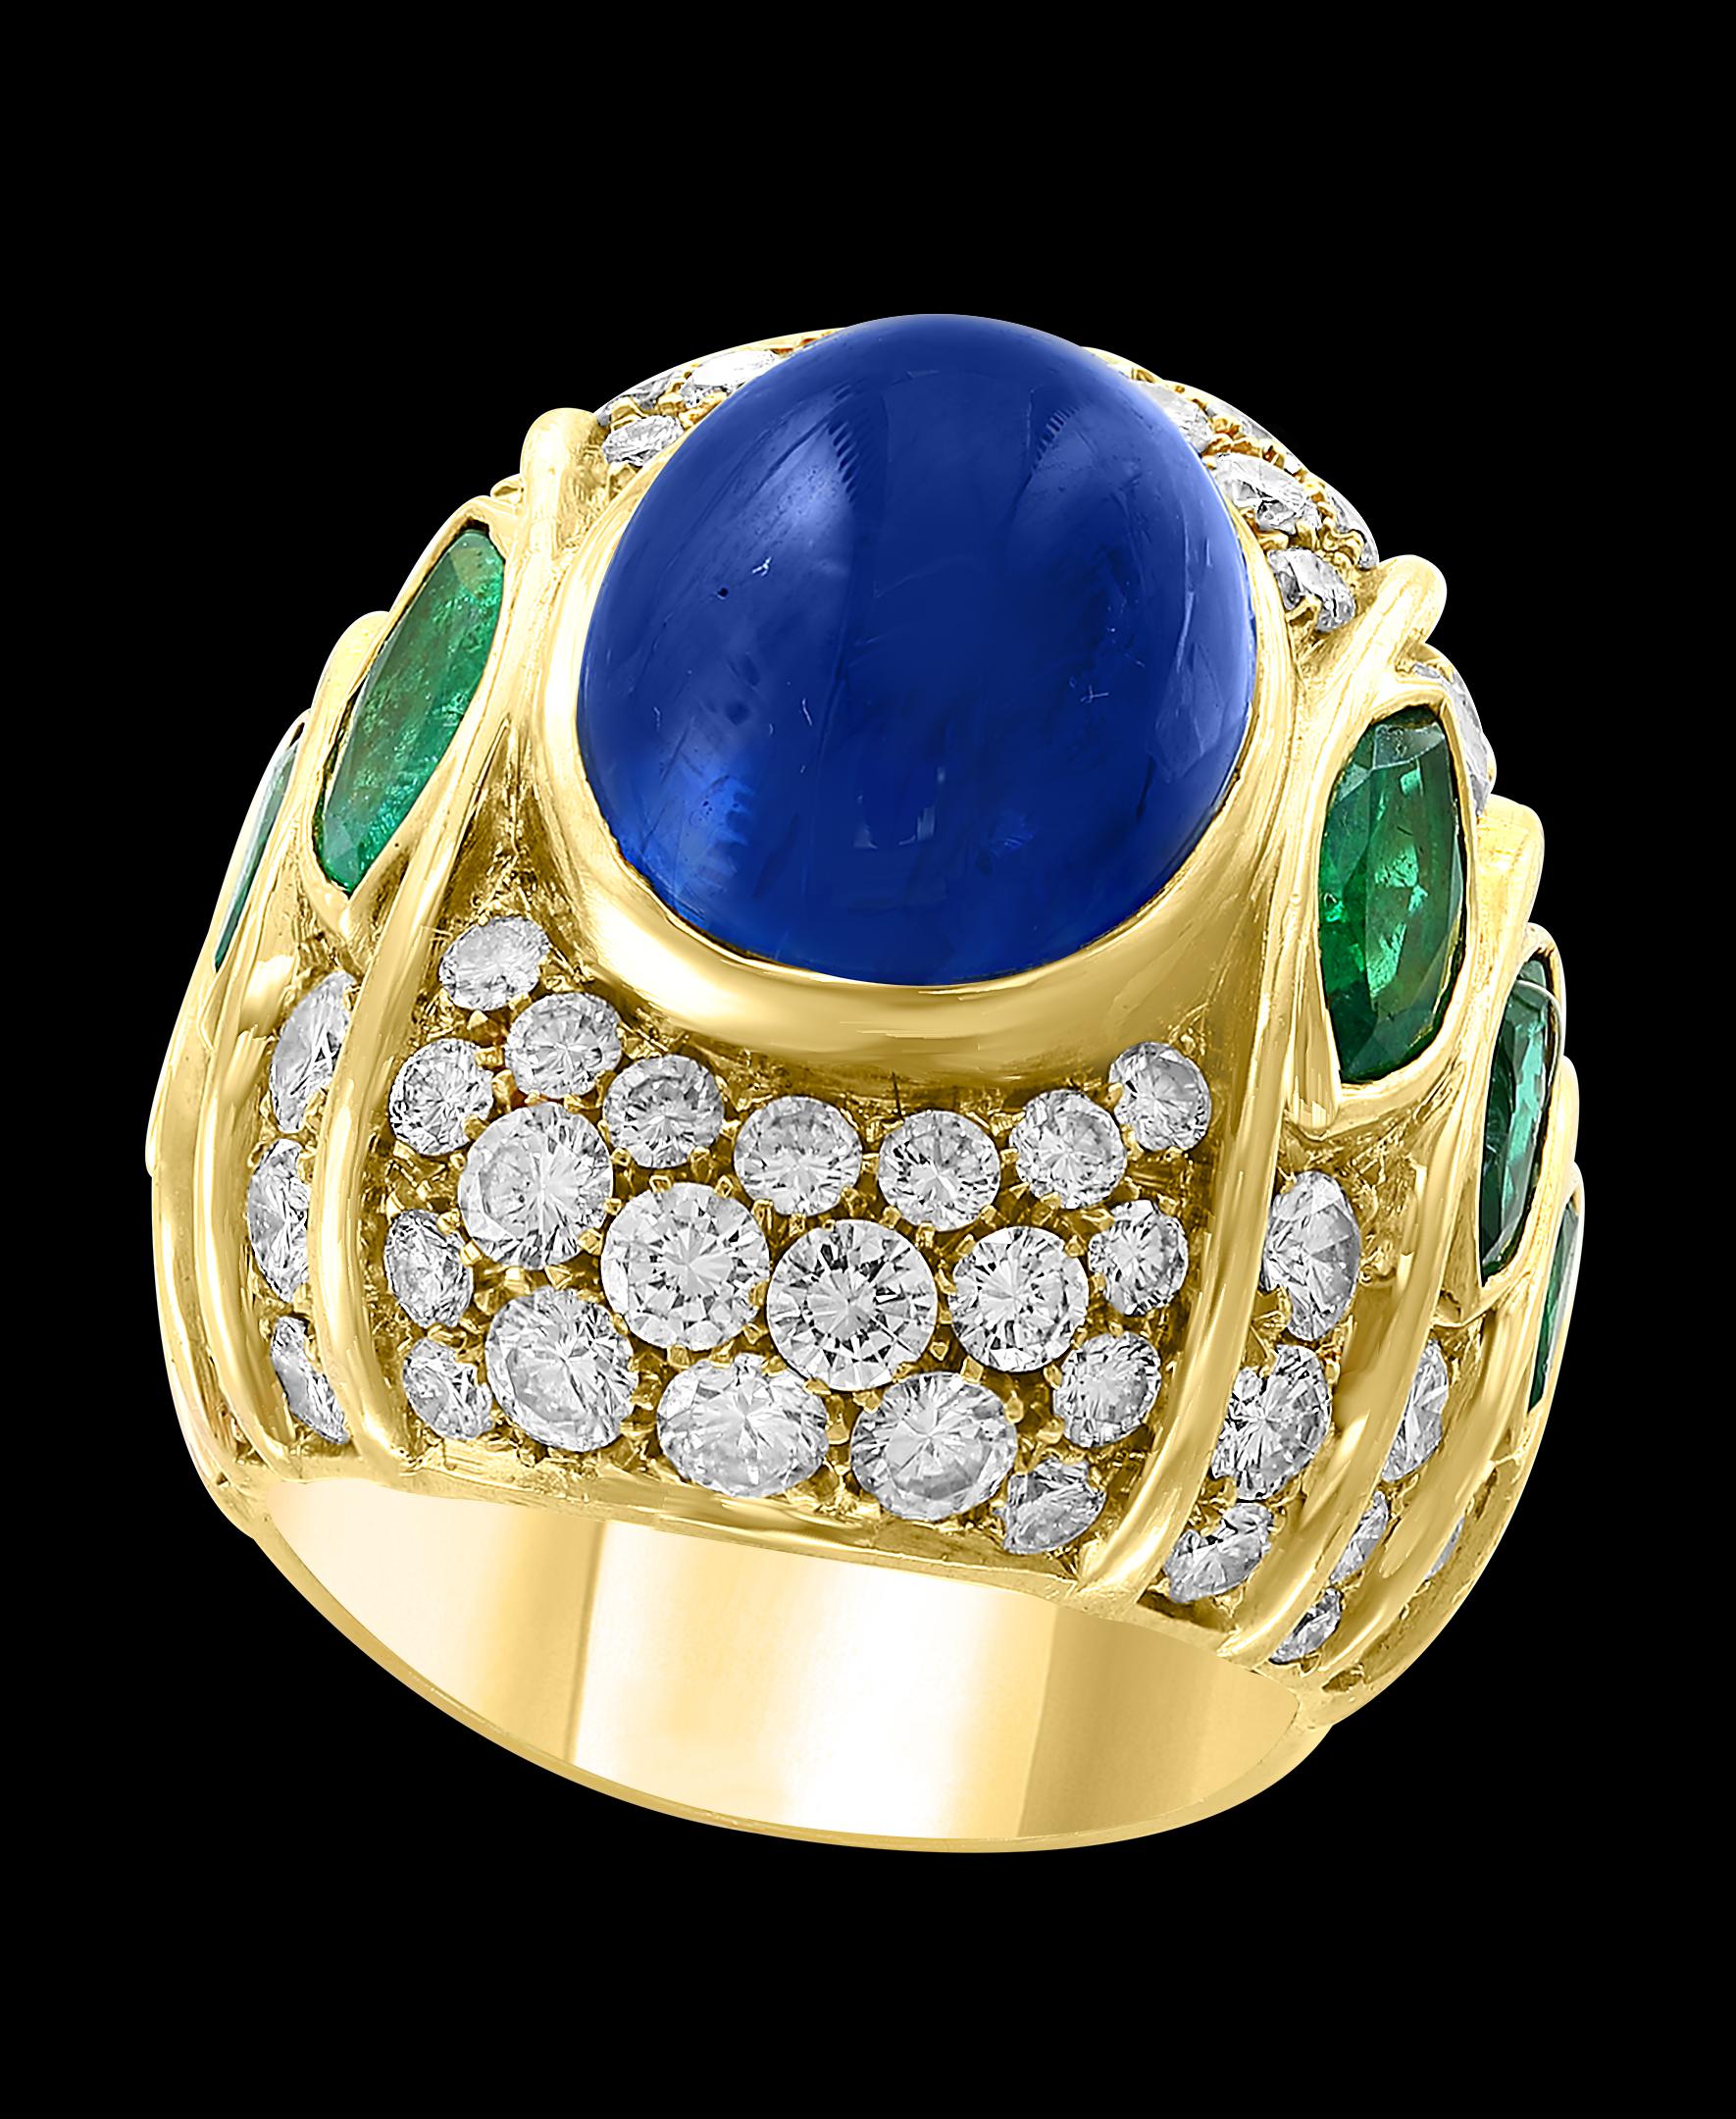 18 Karat Blauer Saphir Cabochon natürlich 
Diamanten 4,5 ct von  brillant  Diamanten im Rundschliff.
3 marquiseförmige Smaragde auf jeder Seite.
18 K Gelbgold 26 Gramm
Unisex-Ring 
Ring Größe 6.5
Wenn Sie die Größe des Rings ändern lassen möchten,